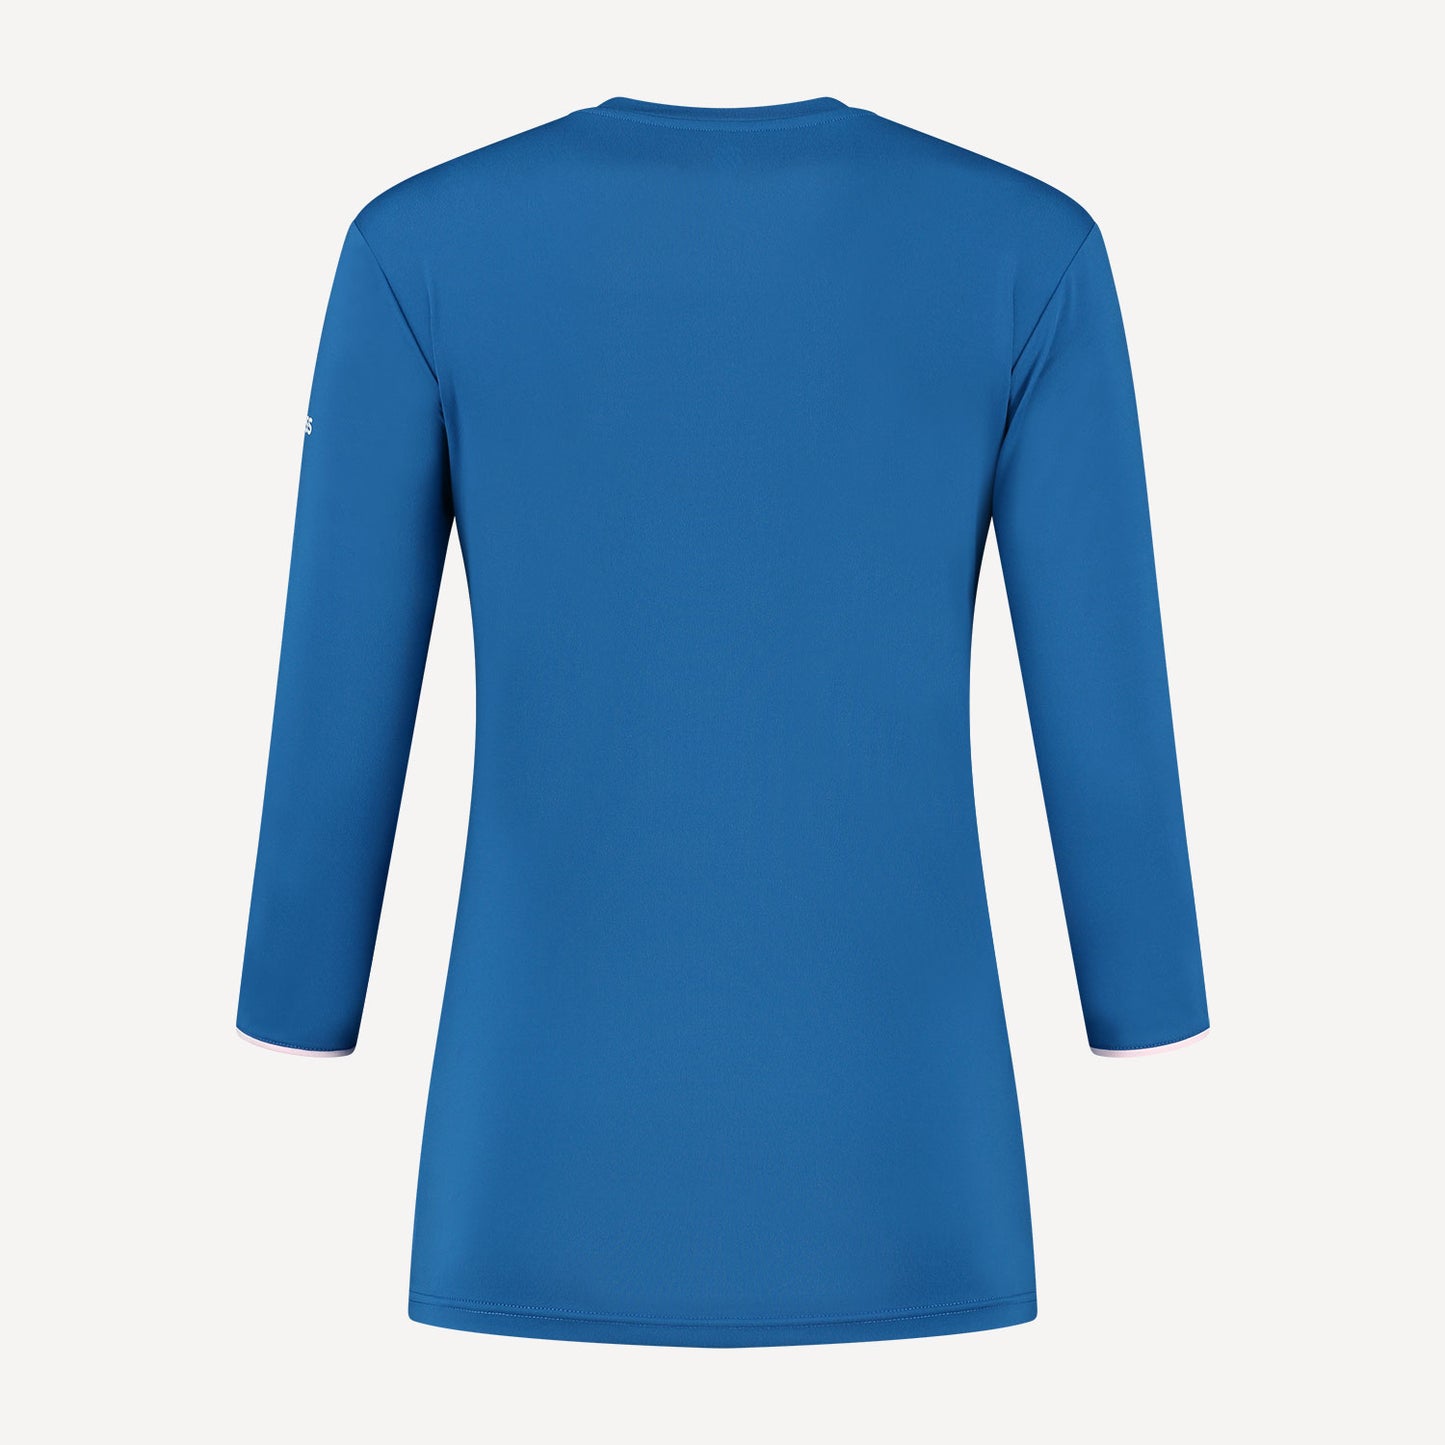 K-Swiss Hypercourt Women's Long-Sleeve Tennis Shirt Blue (2)